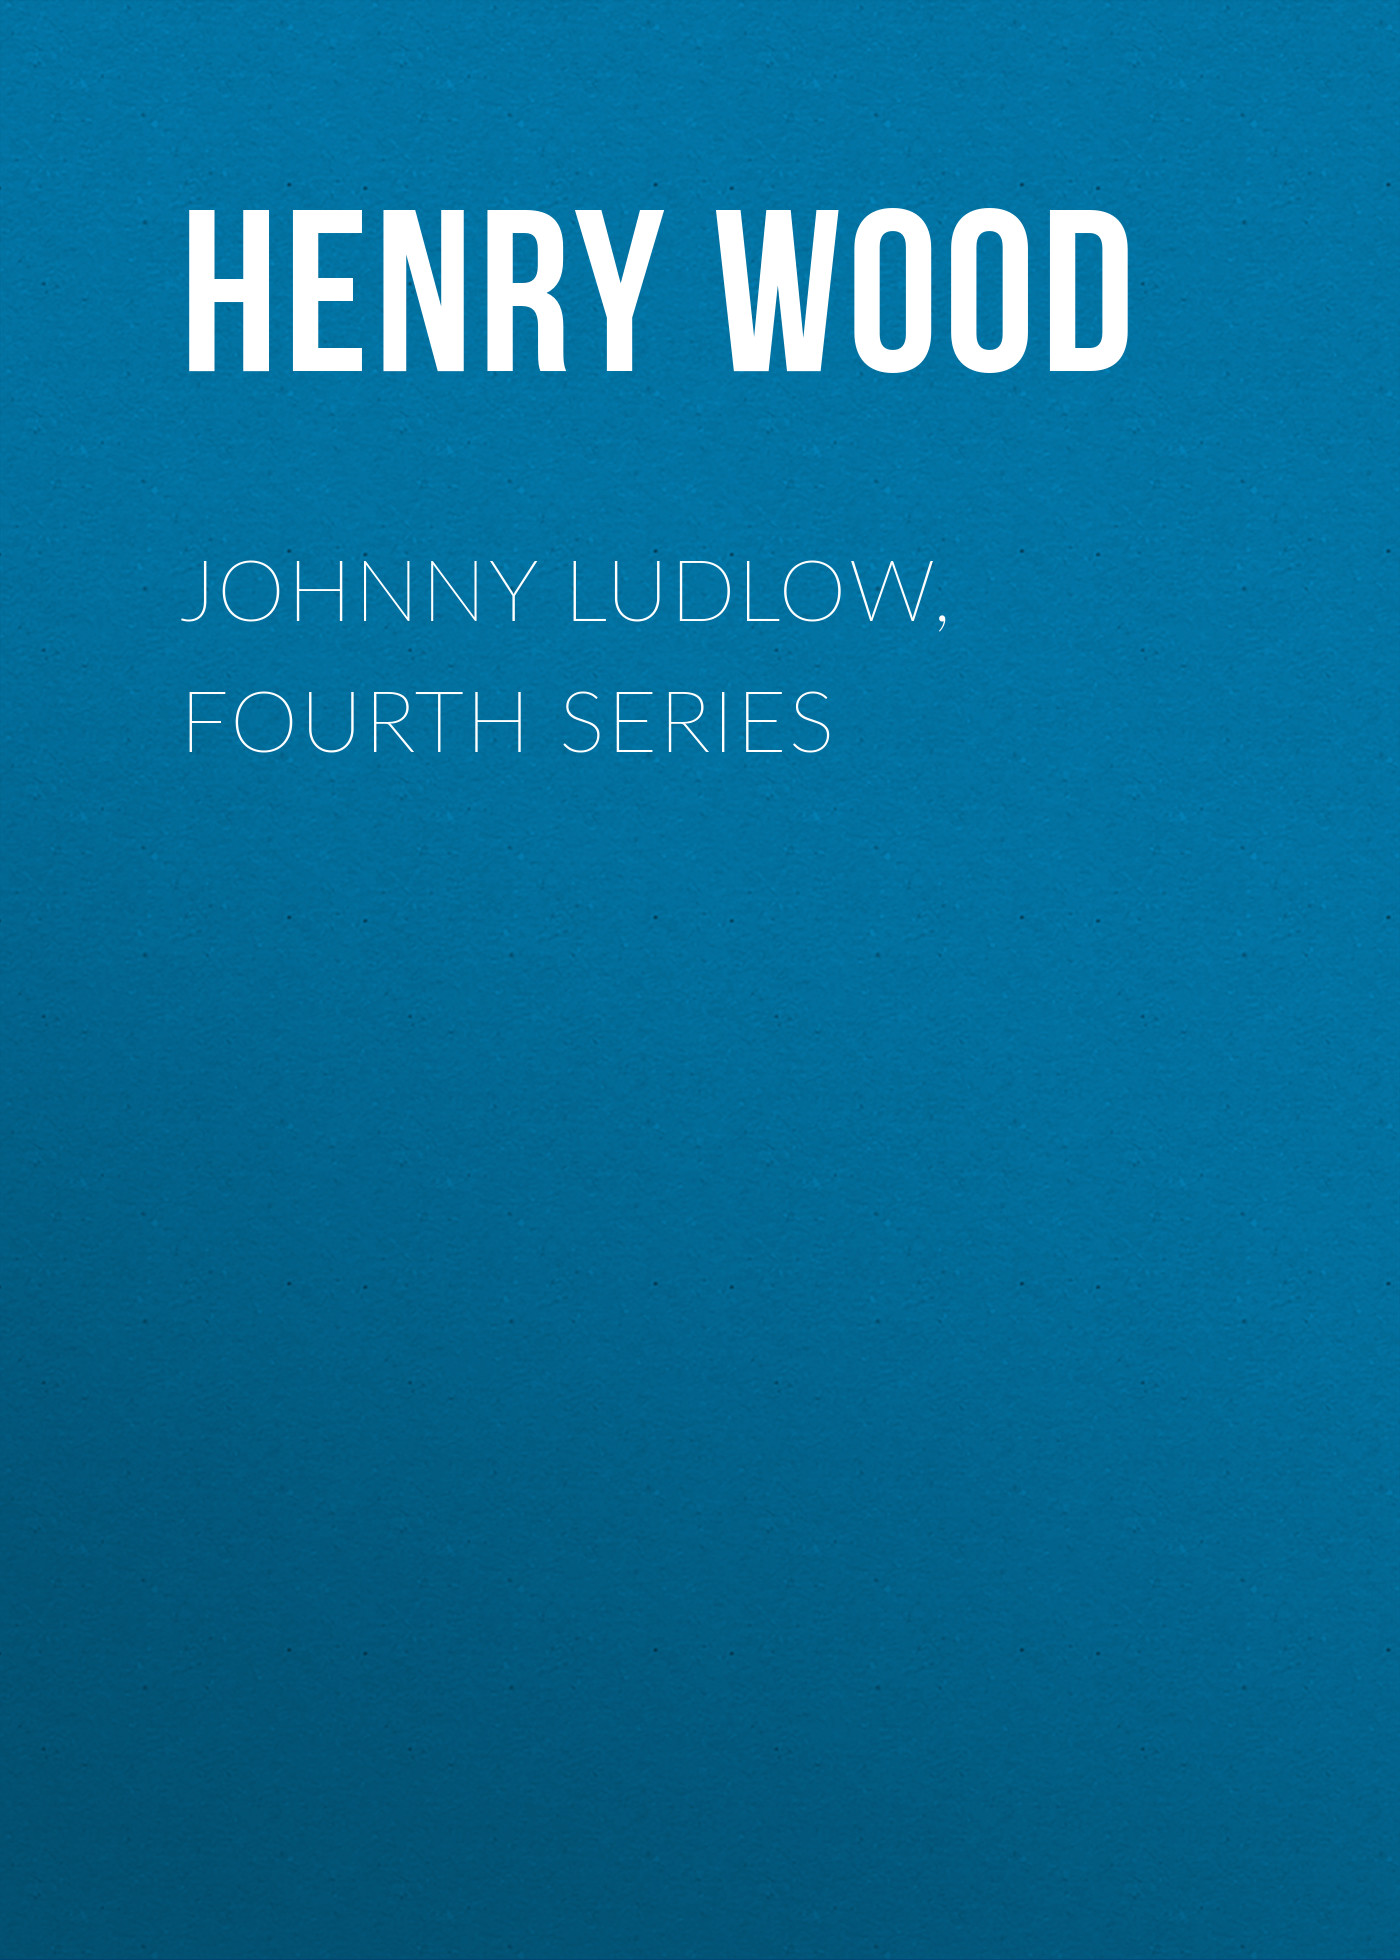 Книга Johnny Ludlow, Fourth Series из серии , созданная Henry Wood, может относится к жанру Зарубежная классика, Литература 19 века, Зарубежная старинная литература. Стоимость электронной книги Johnny Ludlow, Fourth Series с идентификатором 35007529 составляет 0 руб.